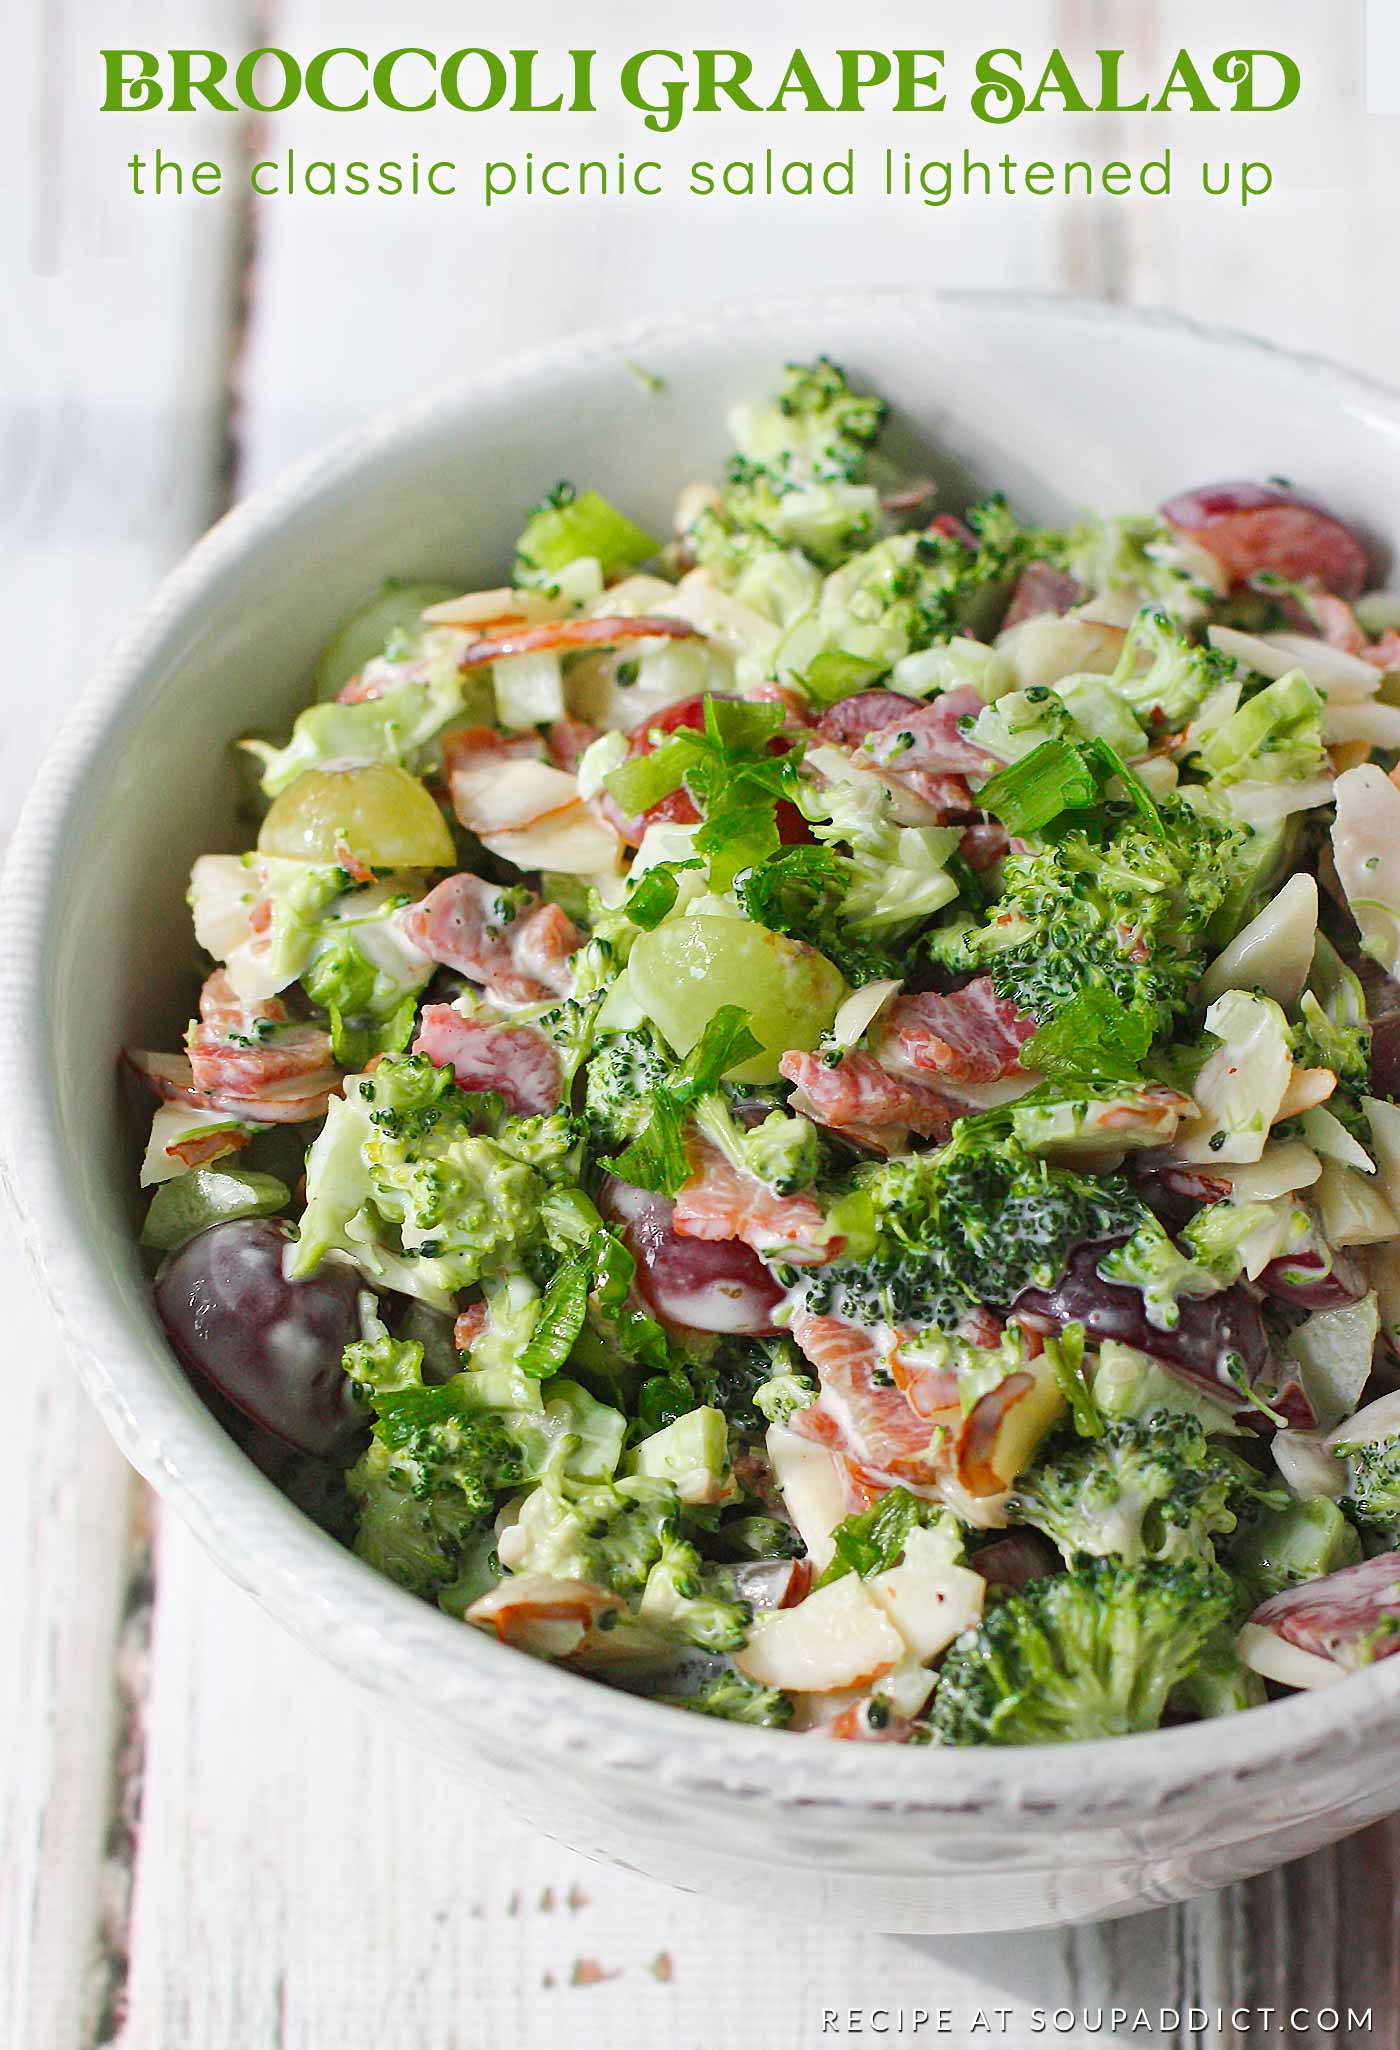 Broccoli grape salad in a white bowl